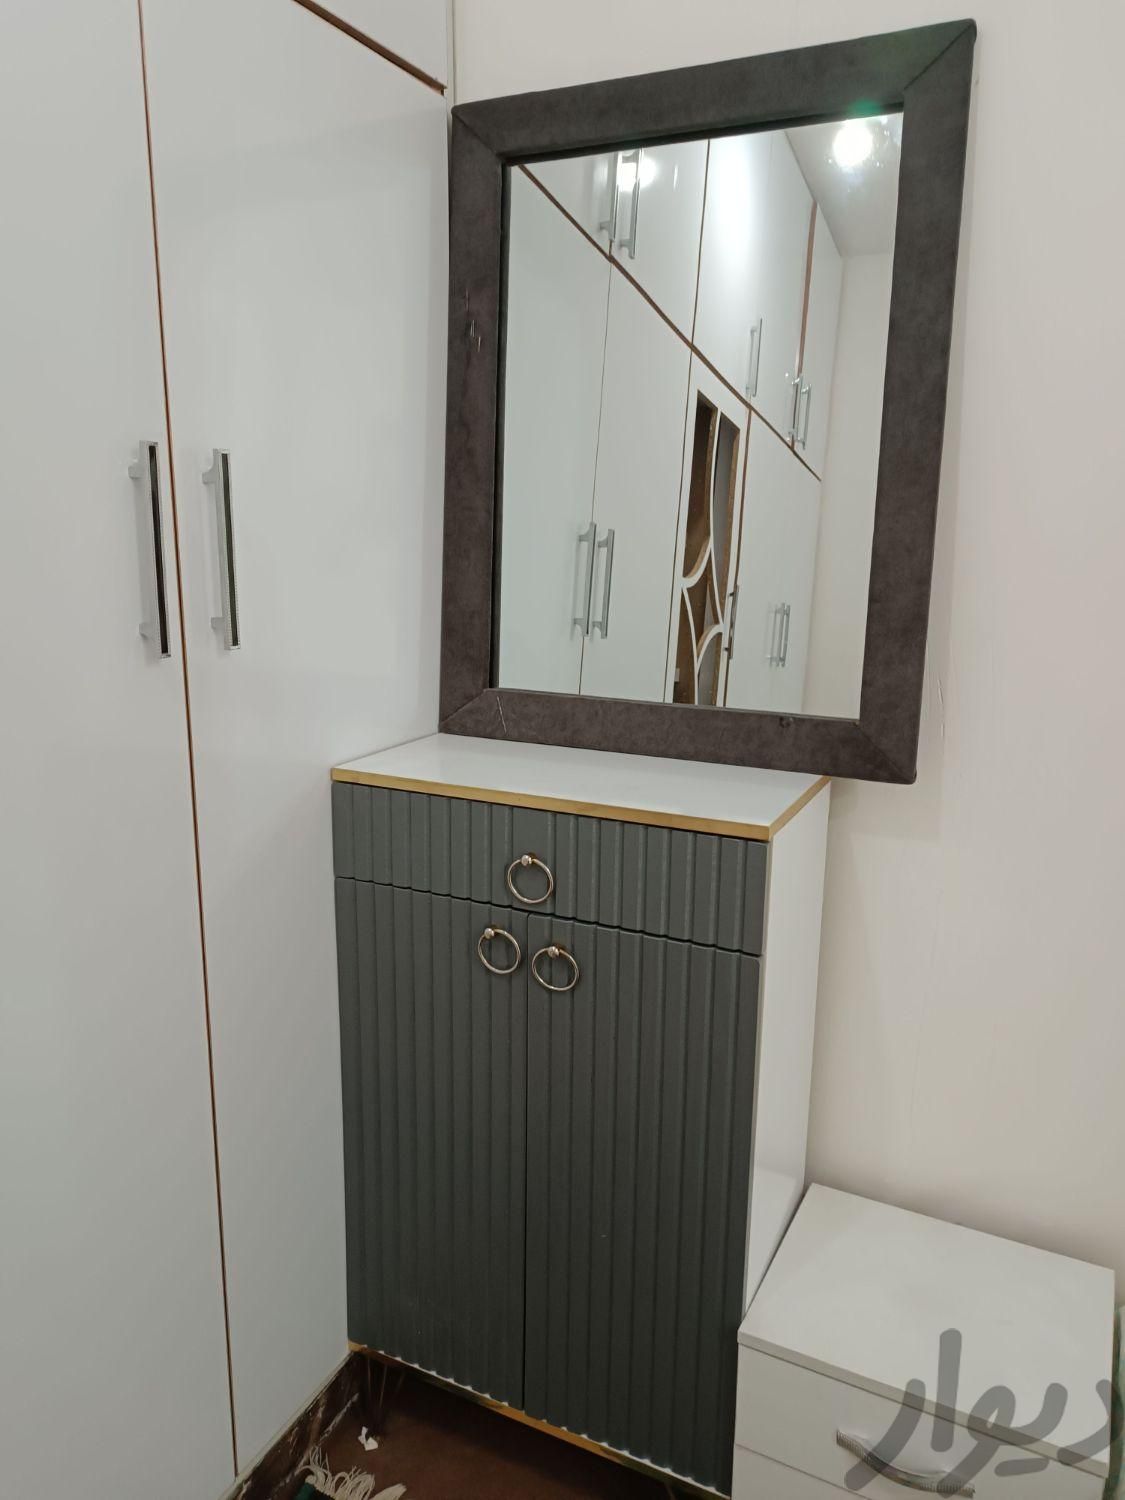 آینه و کنسول درحد نو|آینه|اهواز, پردیس|دیوار